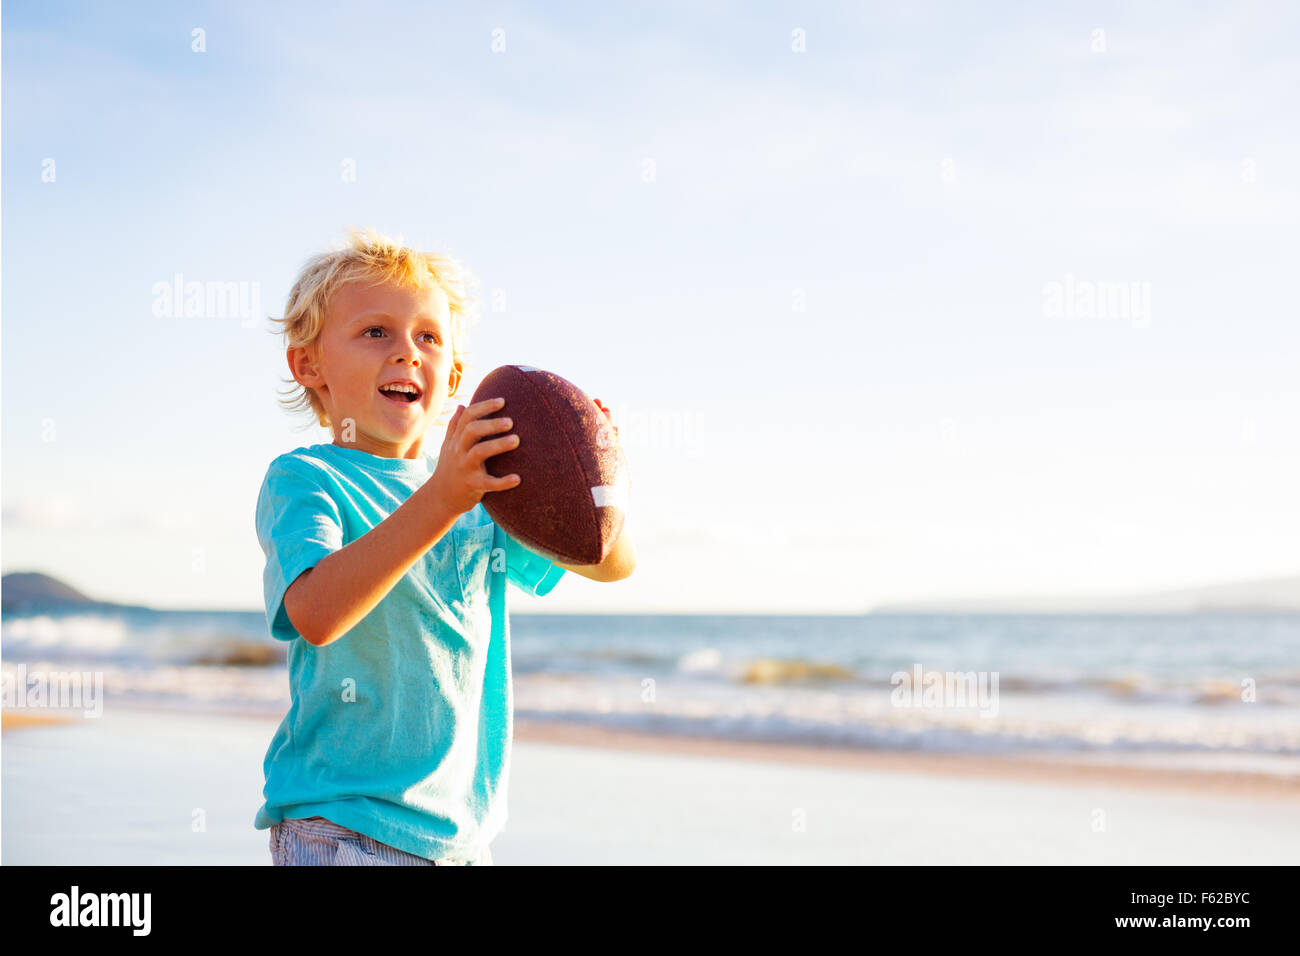 Jeune garçon en rattrapage de jeter le football sur la plage Banque D'Images